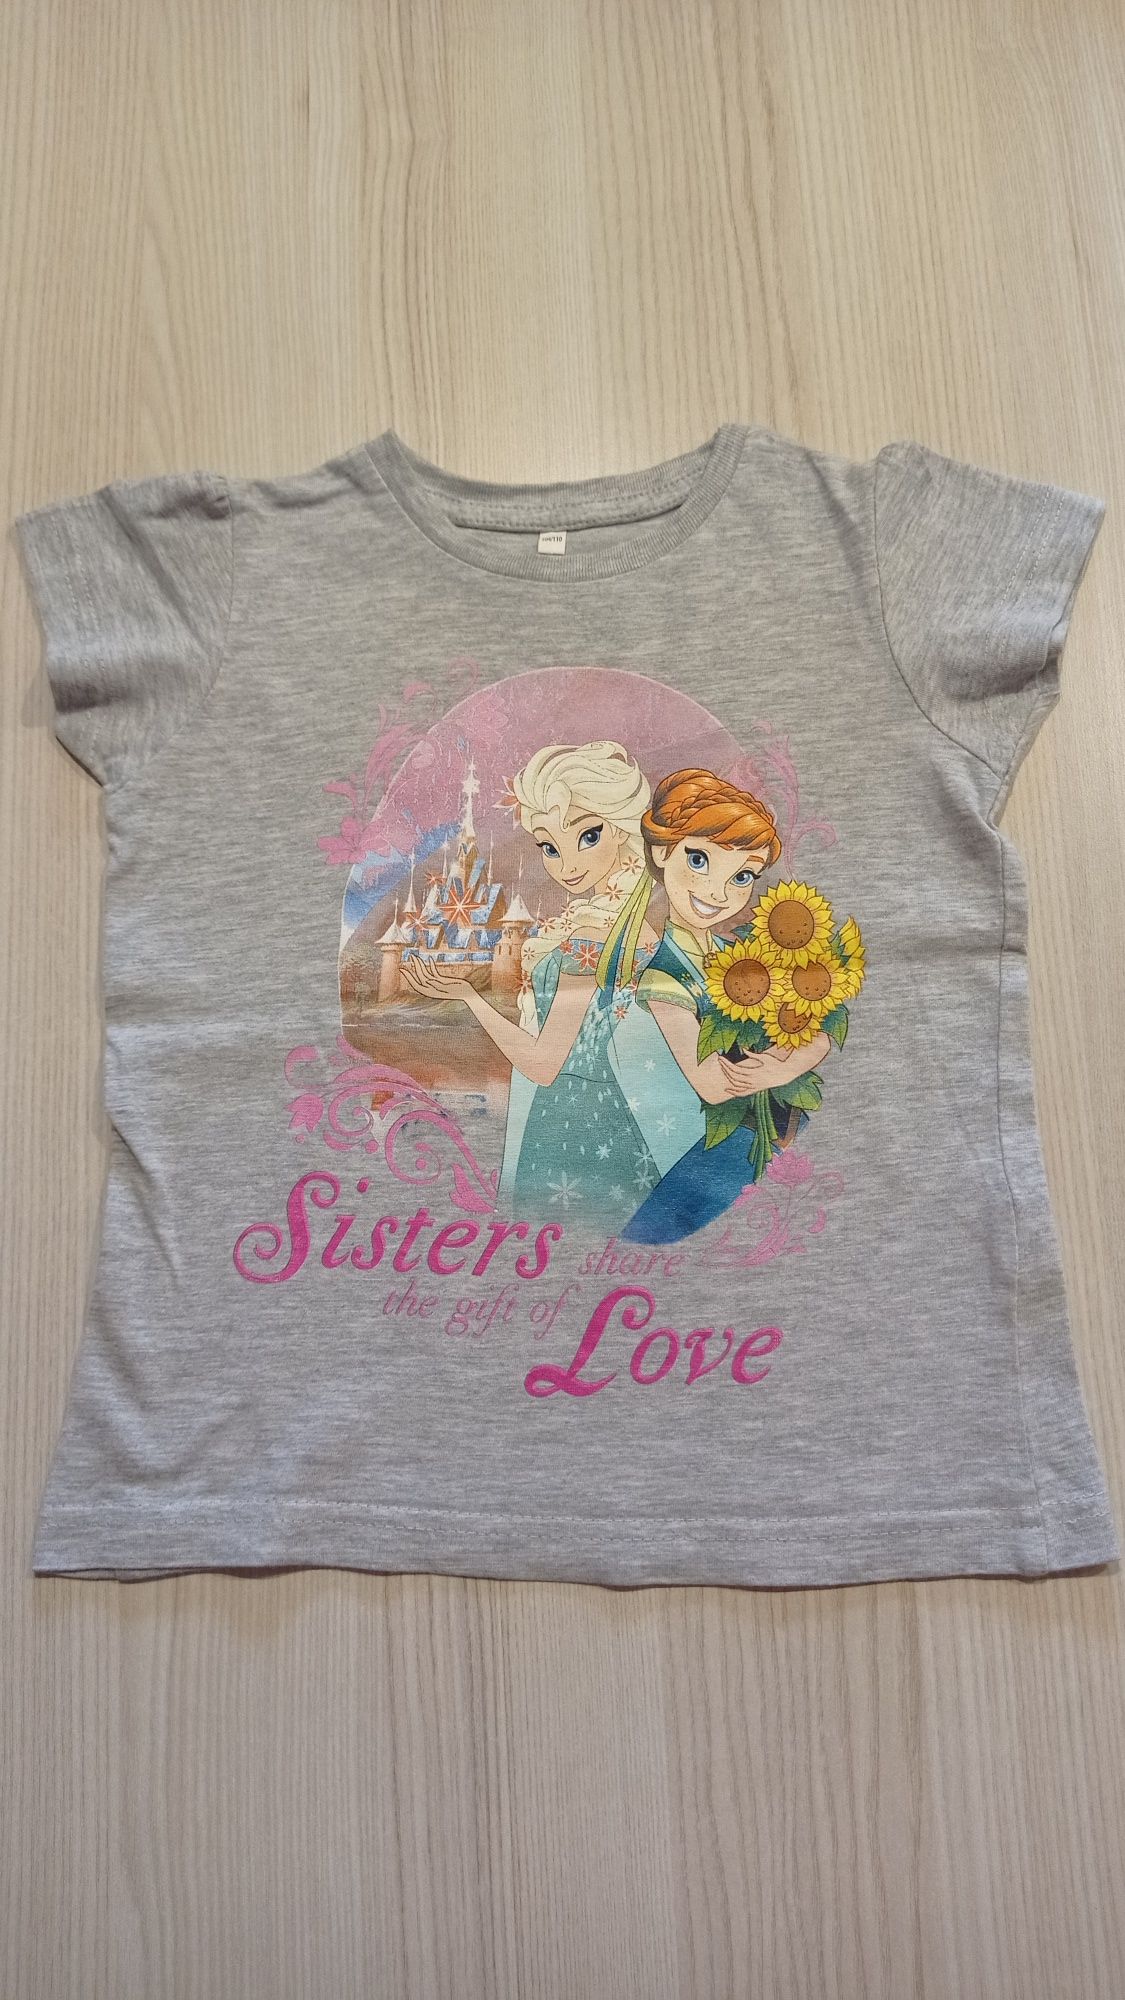 T-shirt koszulka Disney bluzka Elsa (Elza) i Anna - nowa, nieużywana